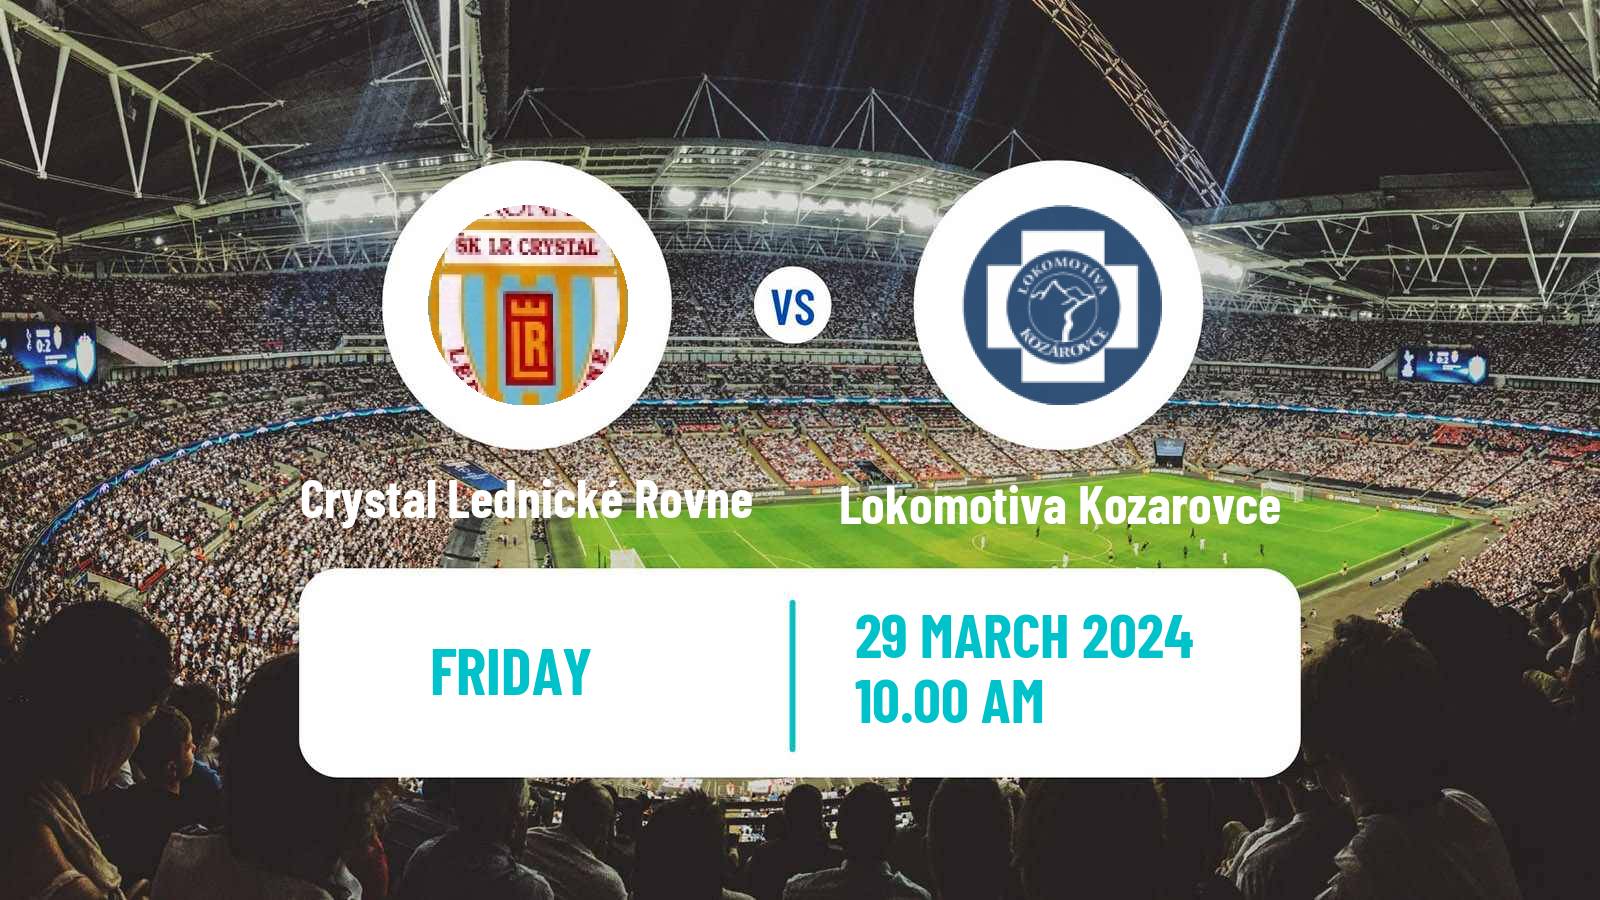 Soccer Slovak 4 Liga West Crystal Lednické Rovne - Lokomotiva Kozarovce